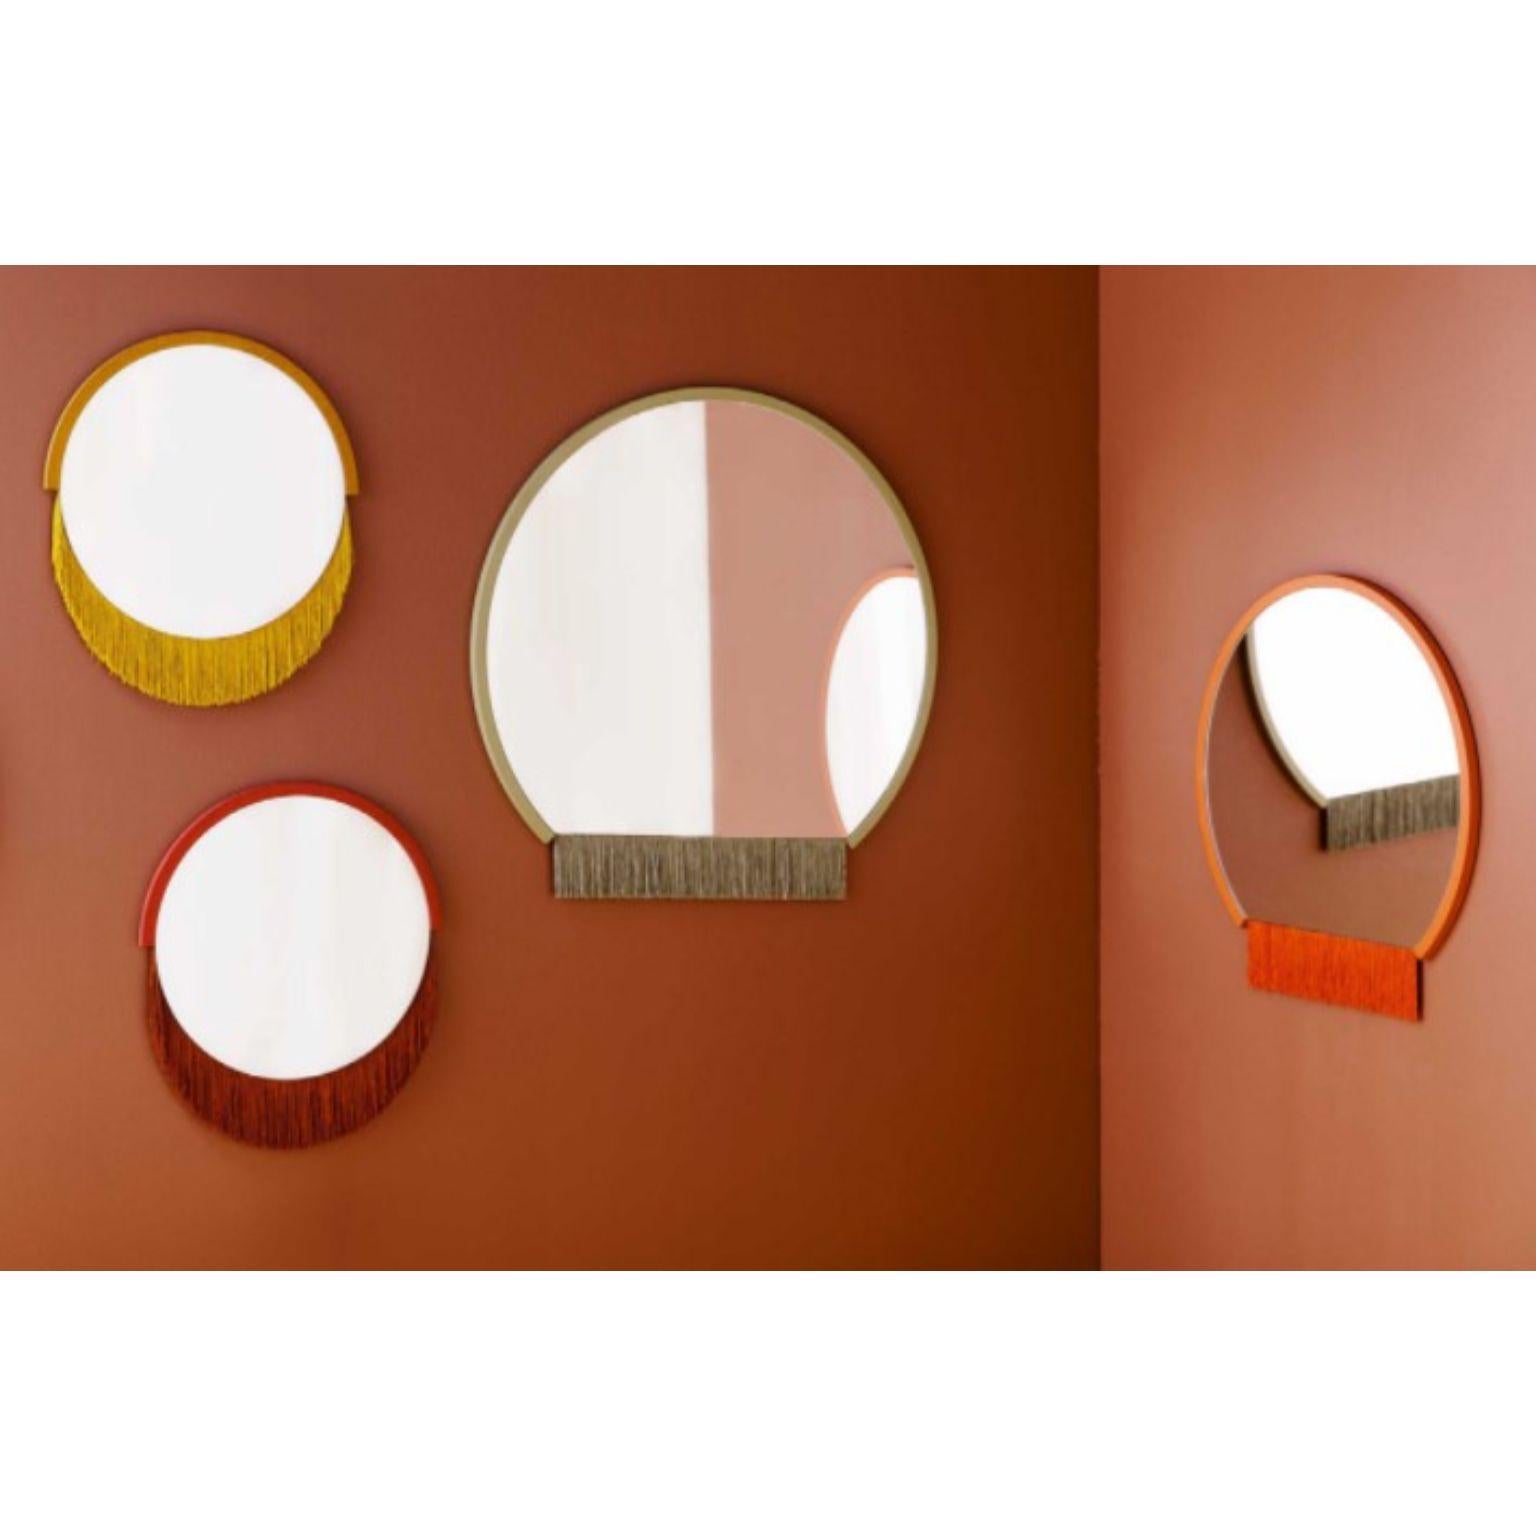 Satz von 4 Boudoir-Wandspiegeln von Tero Kuitunen.
Kleine (2), mittlere und große Spiegel.
MATERIAL: Glasspiegel, MDF-Platte, Textilfransen.
Abmessungen: D68 x B68 x H1.6, D53 x B53 x H1.6 cm, D38 x B38 x H1.6 cm
Ebenfalls erhältlich: Verschiedene